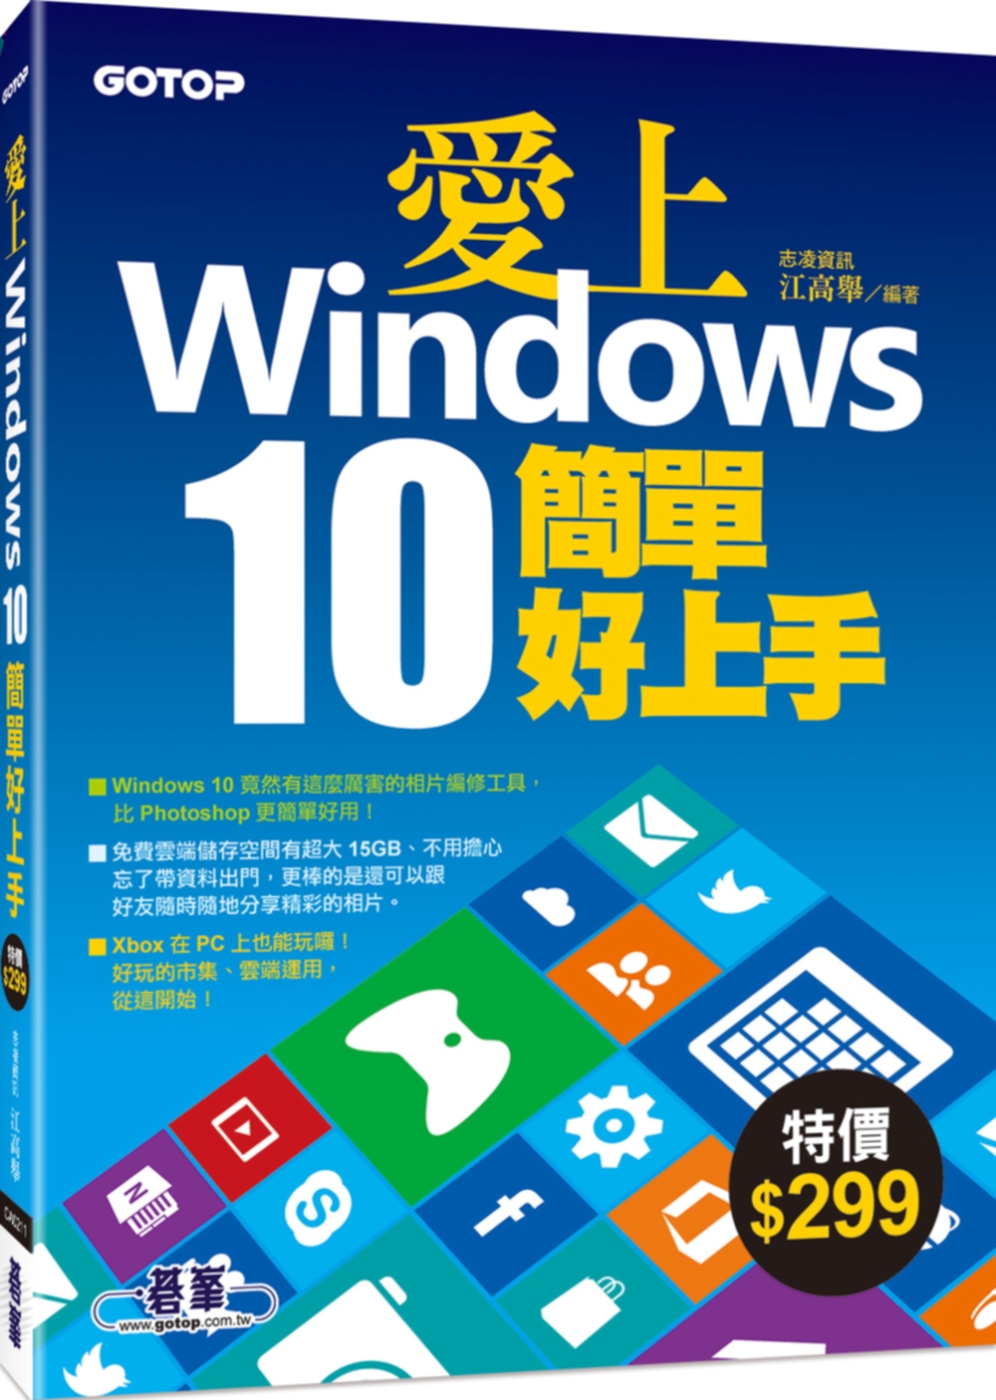 愛上Windows 10簡單好上手